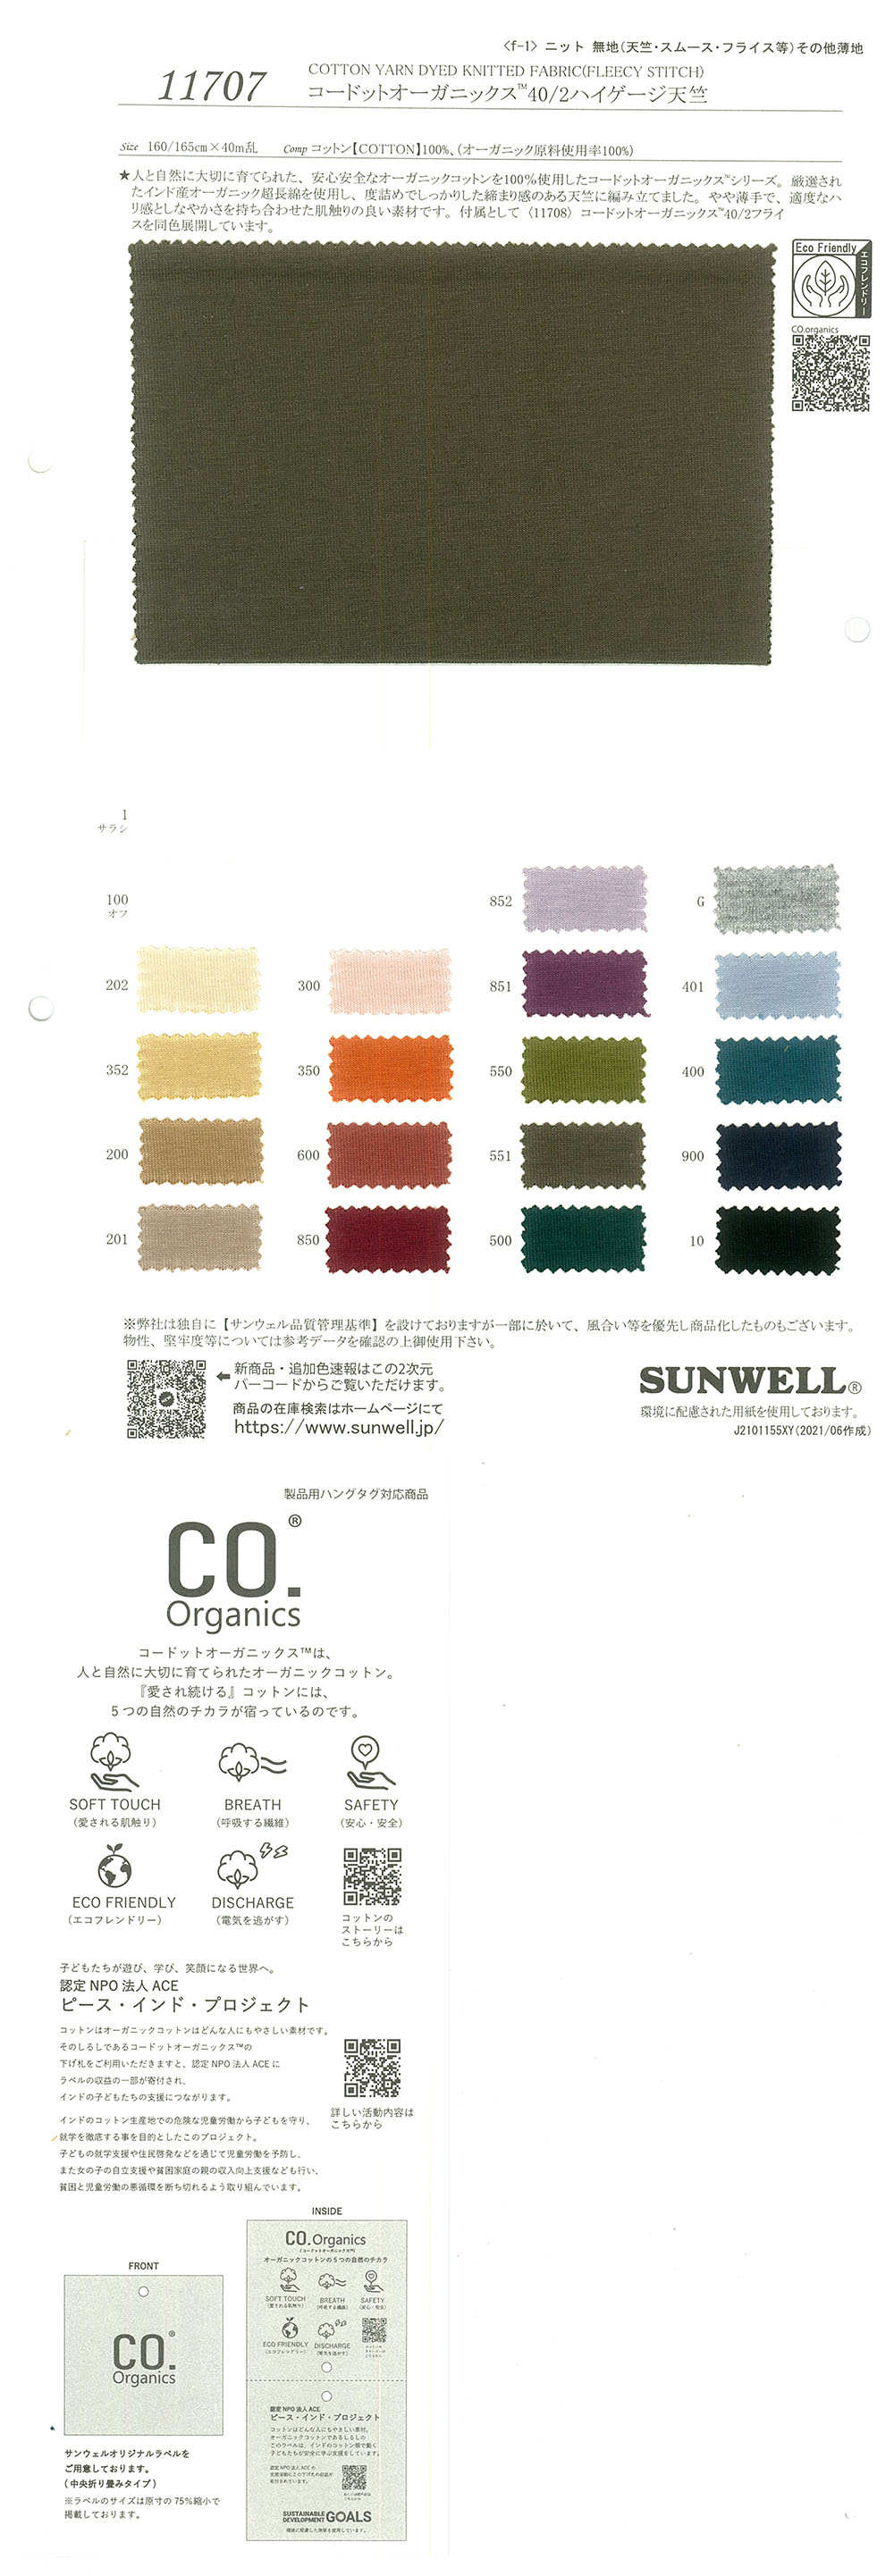 11707 Cordot Organics (R) 40/2 Algodón De Calibre Alto Algodón Tianzhu[Fabrica Textil] SUNWELL